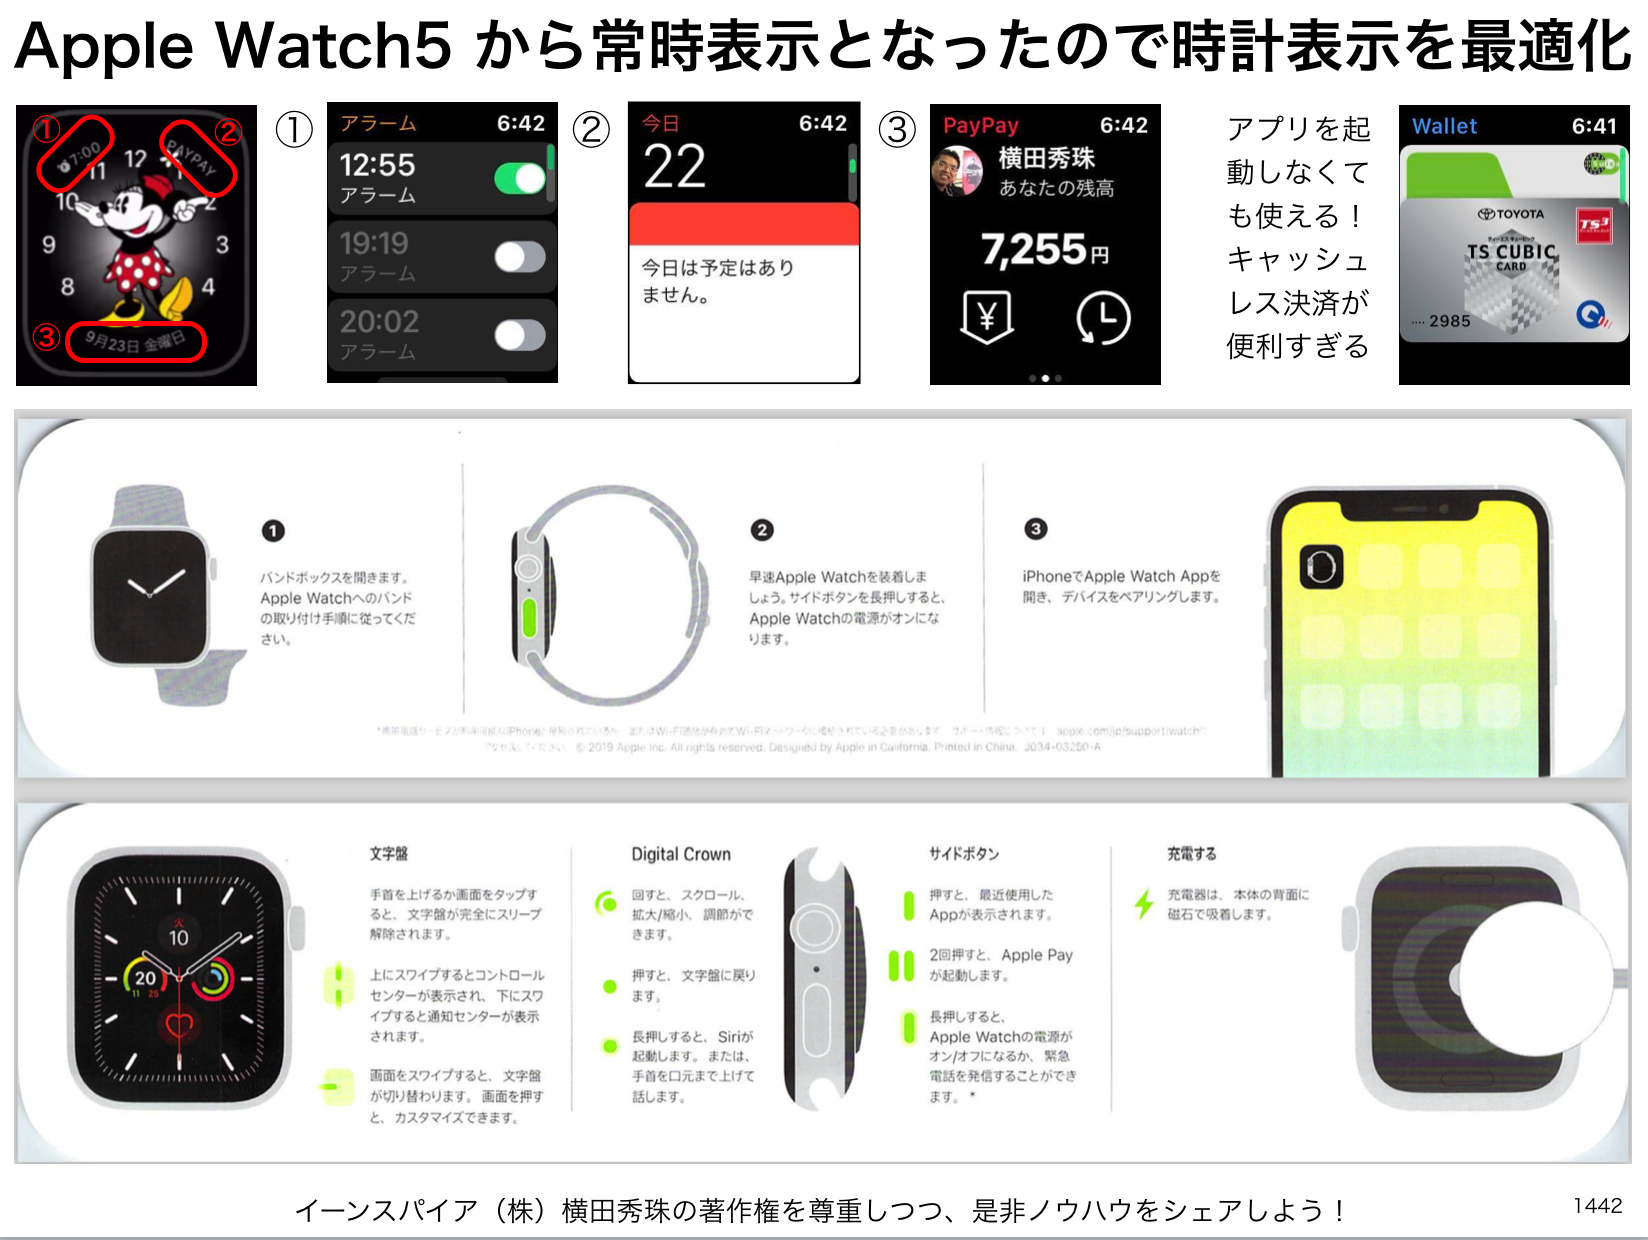 Apple Watch5 から常時表示となったので時計表示を最適化